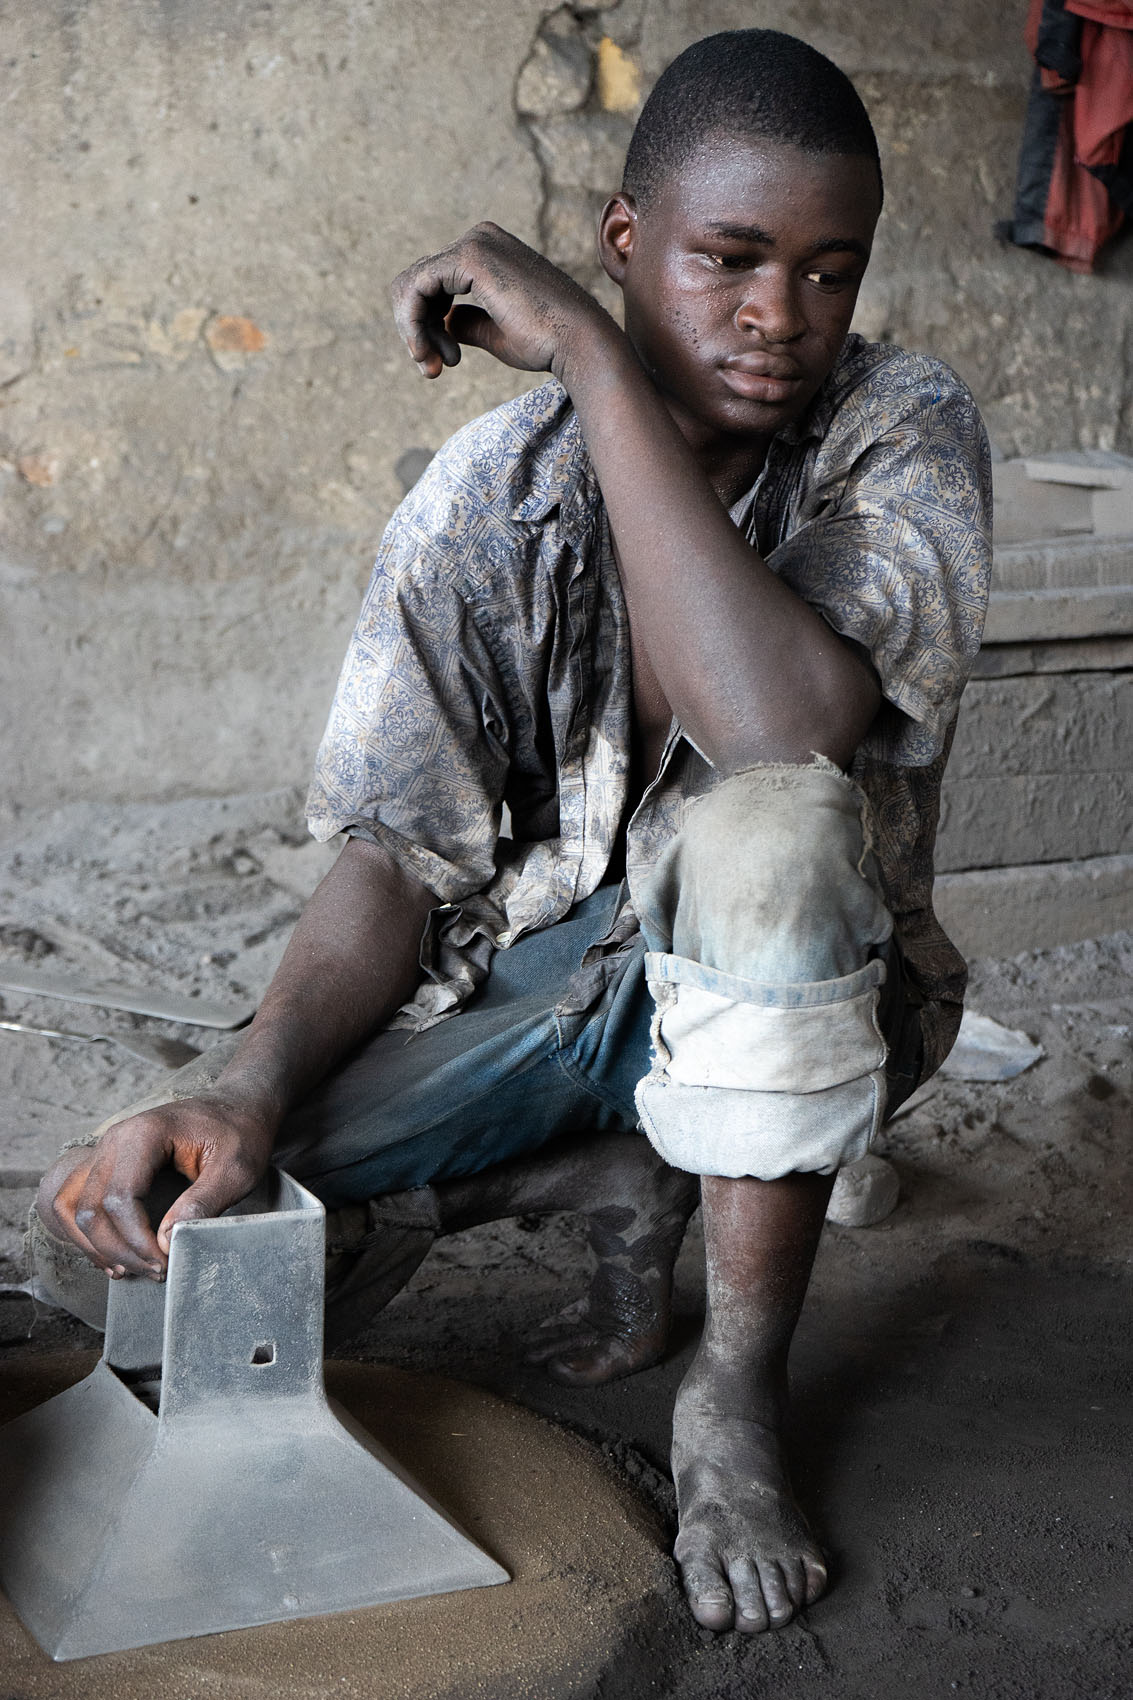 Porträts Fotos von einem Mann in Ghana